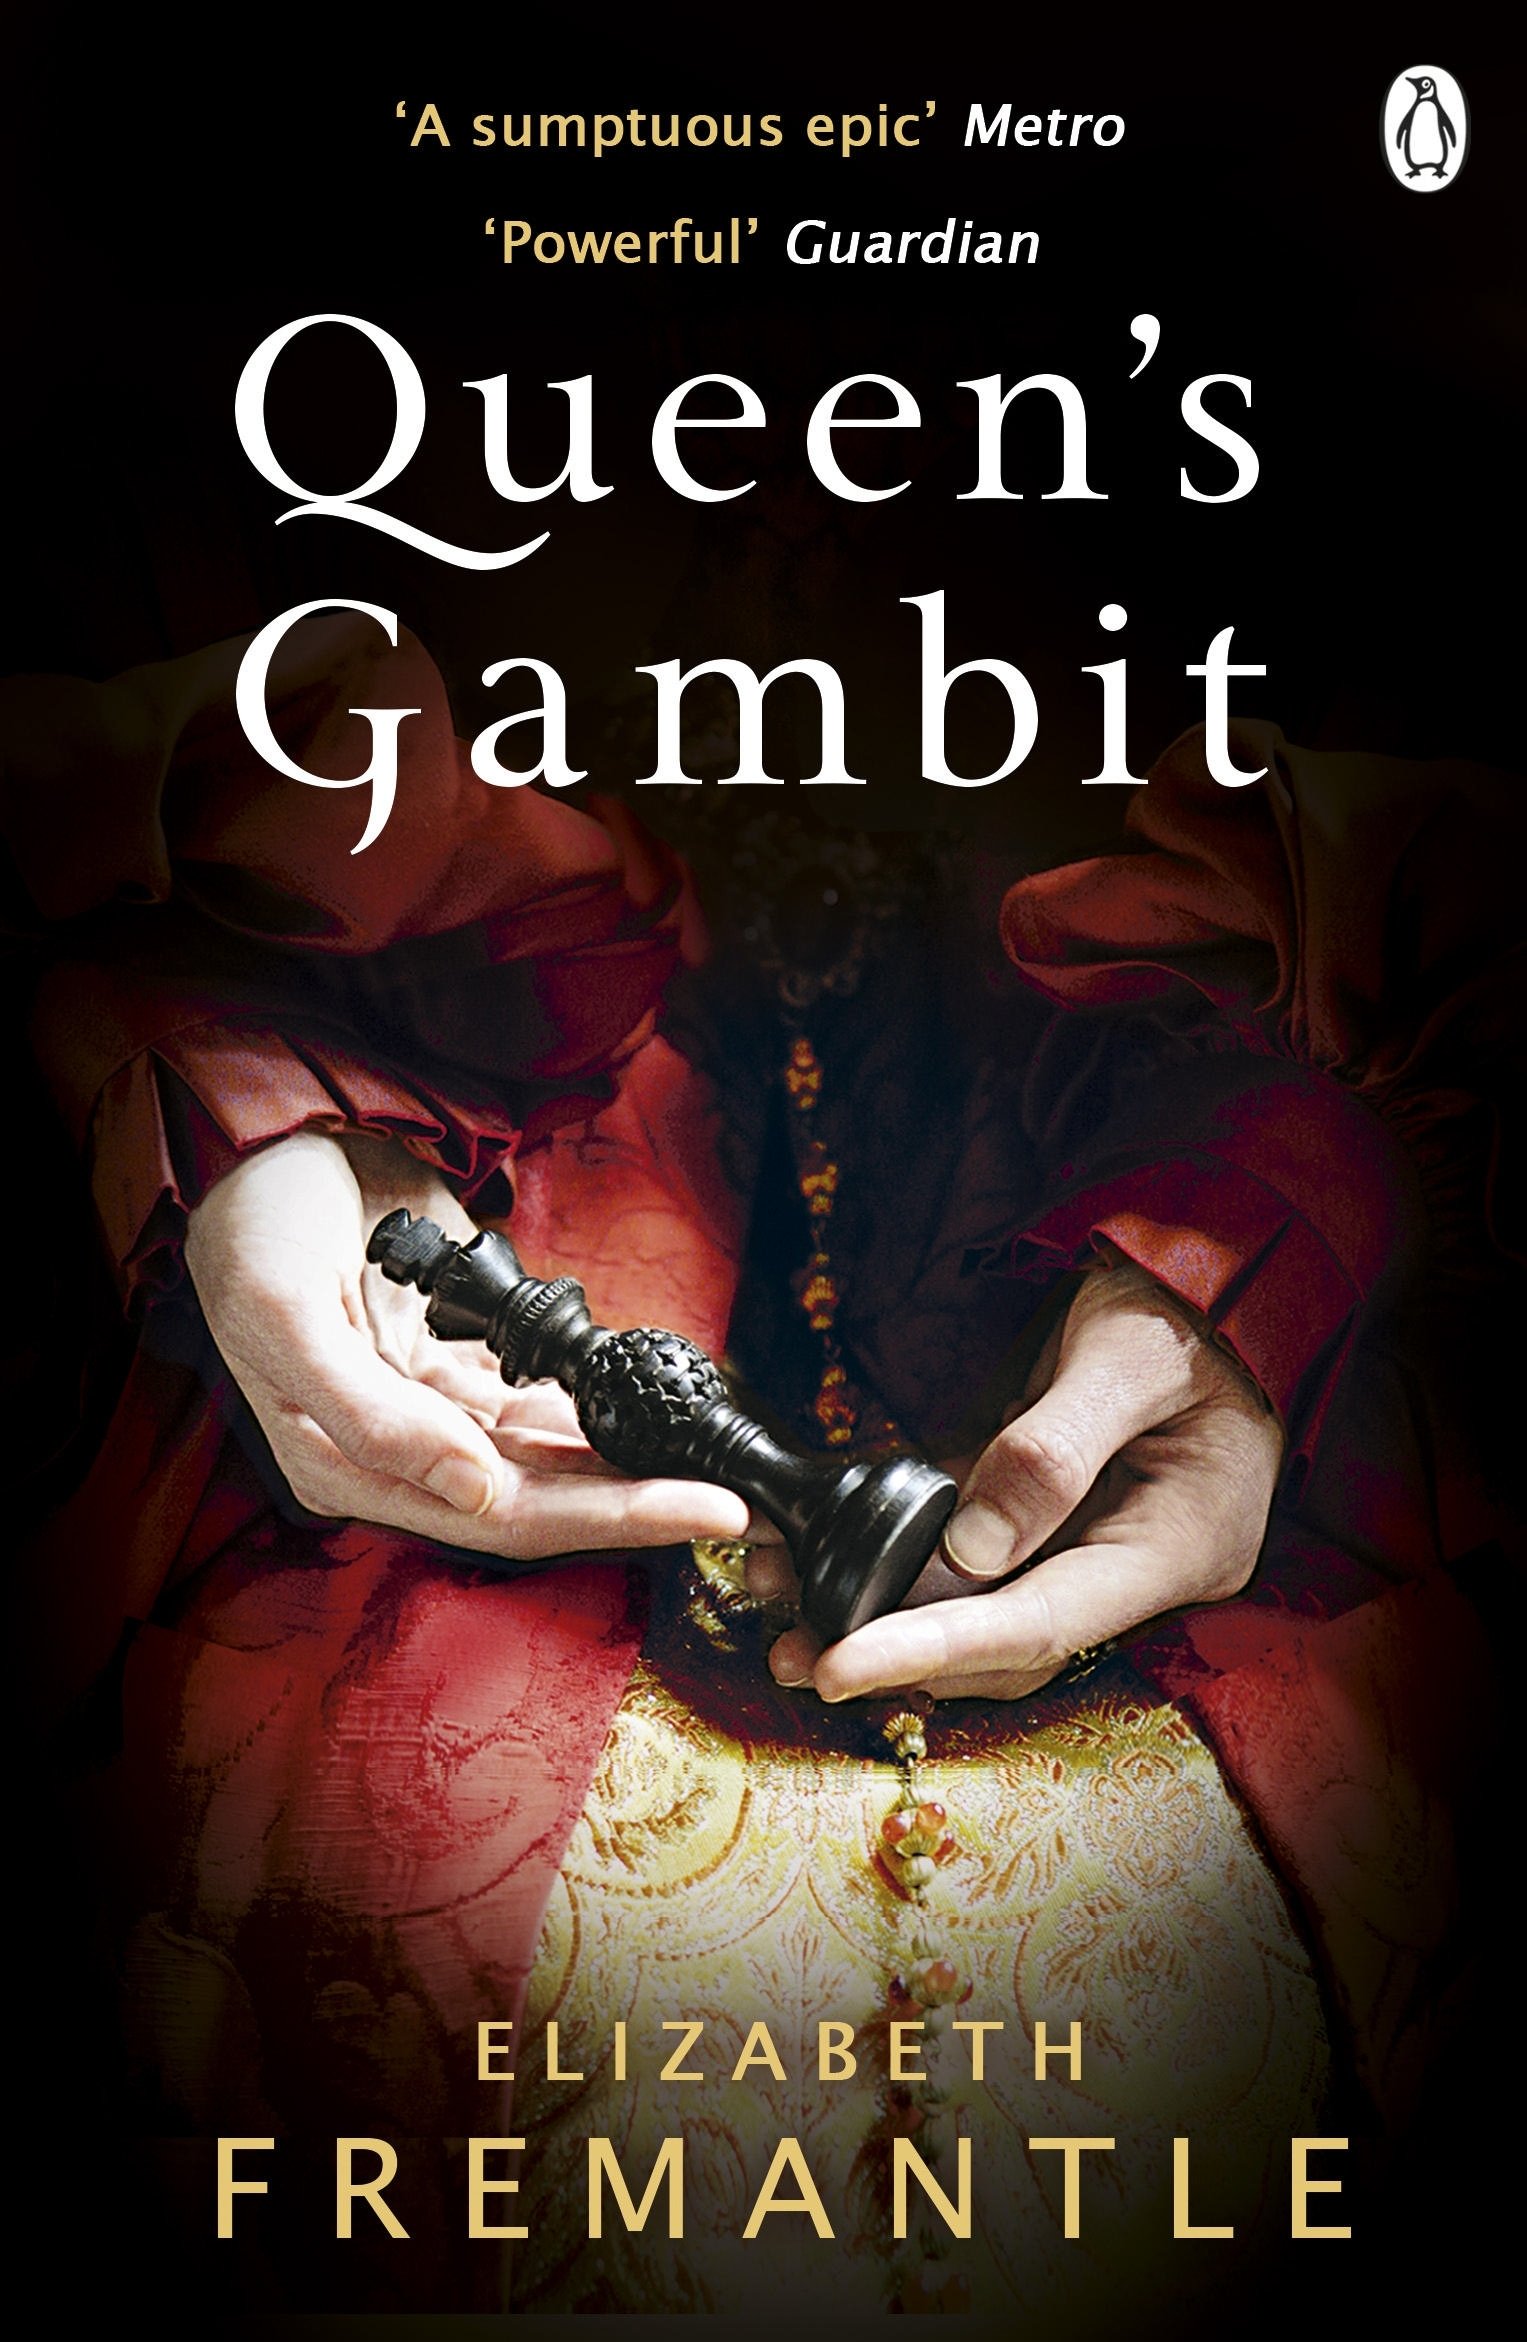 The Queen's Gambit” by Elizabeth Fremantle